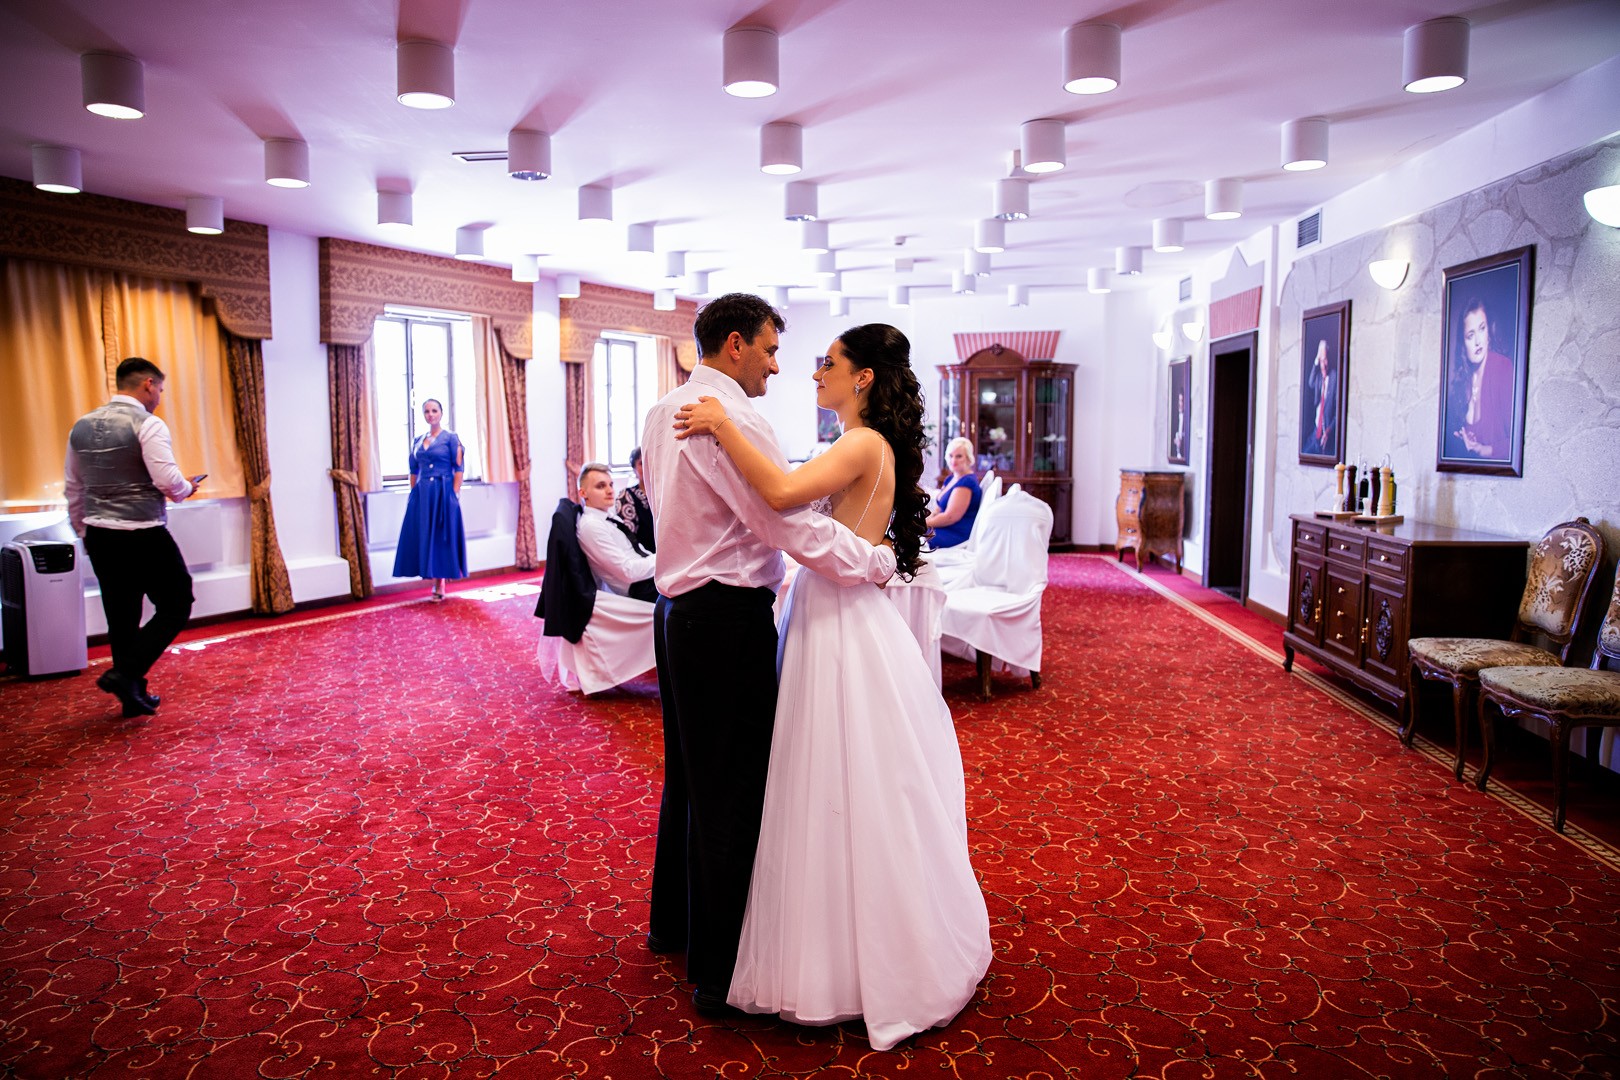 Picturesque dream wedding of Kloudy & Michal in Hluboká nad Vltavou. - 0297.jpg